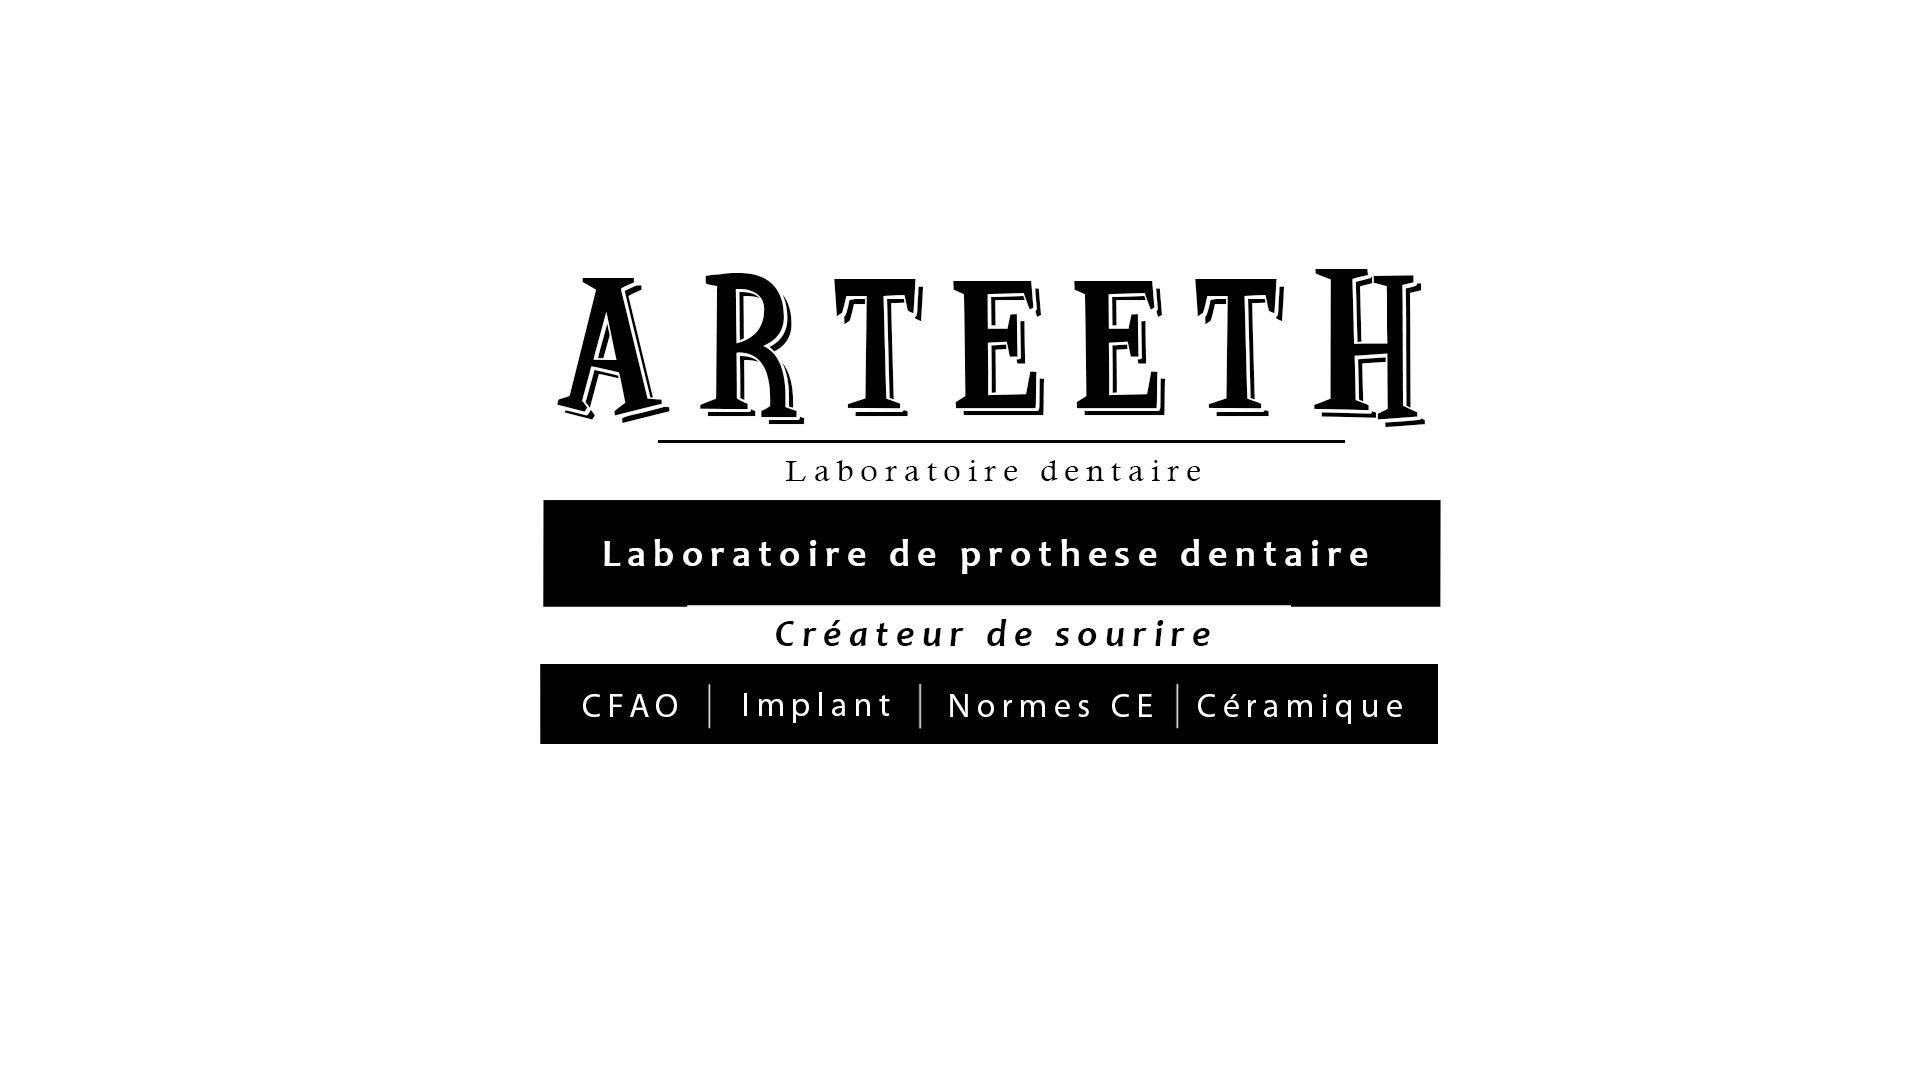 Visuel de présentation d'arteeth laboratoire dentaire